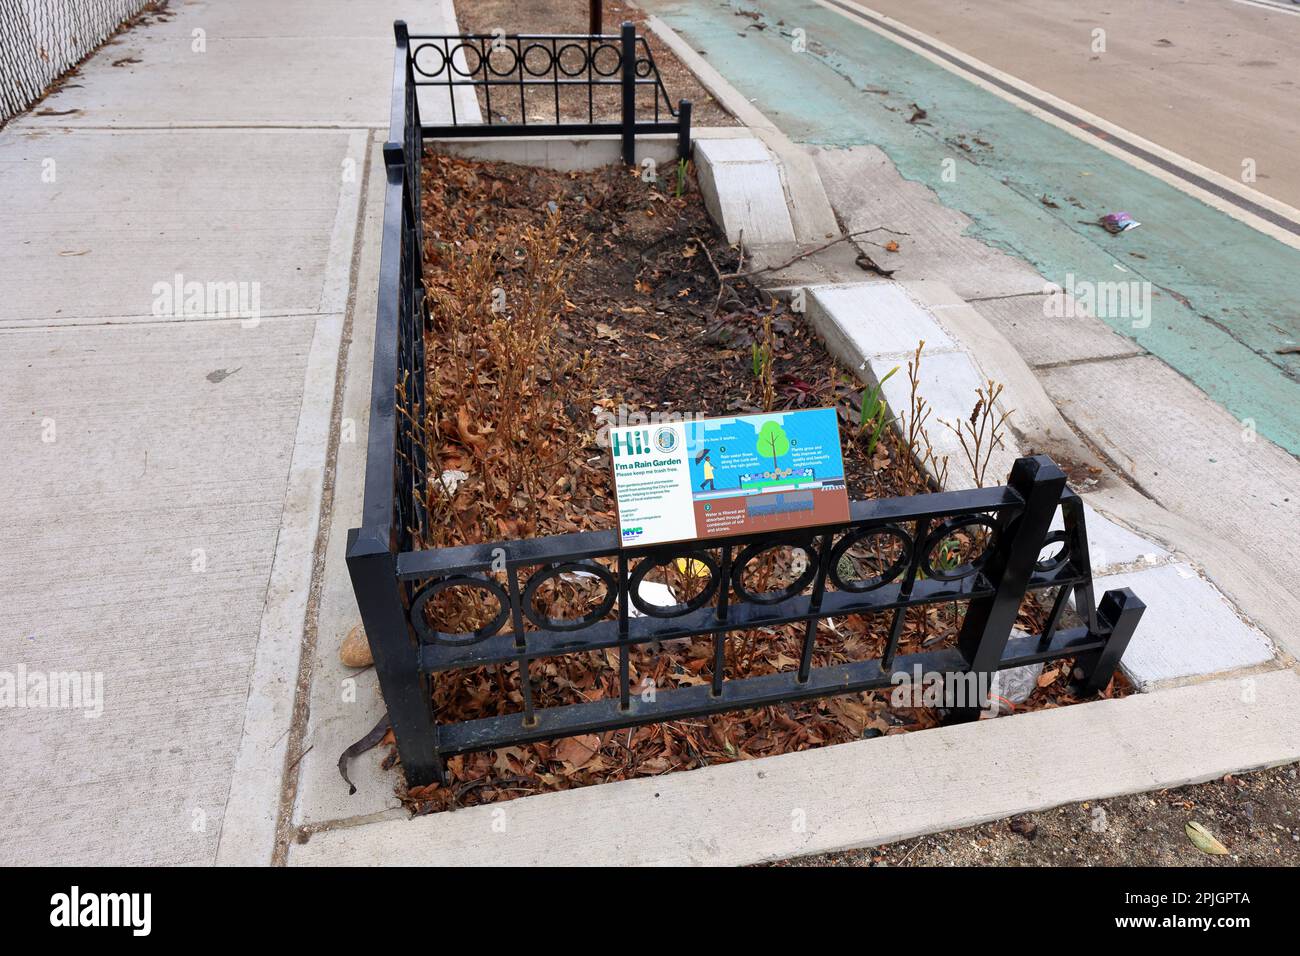 Ein NYC-Regengarten mit Hinweisschildern. Regengärten sind so konzipiert, dass sie den Sturmwasserfluss von der Kanalisation ableiten (siehe weitere Informationen) Stockfoto